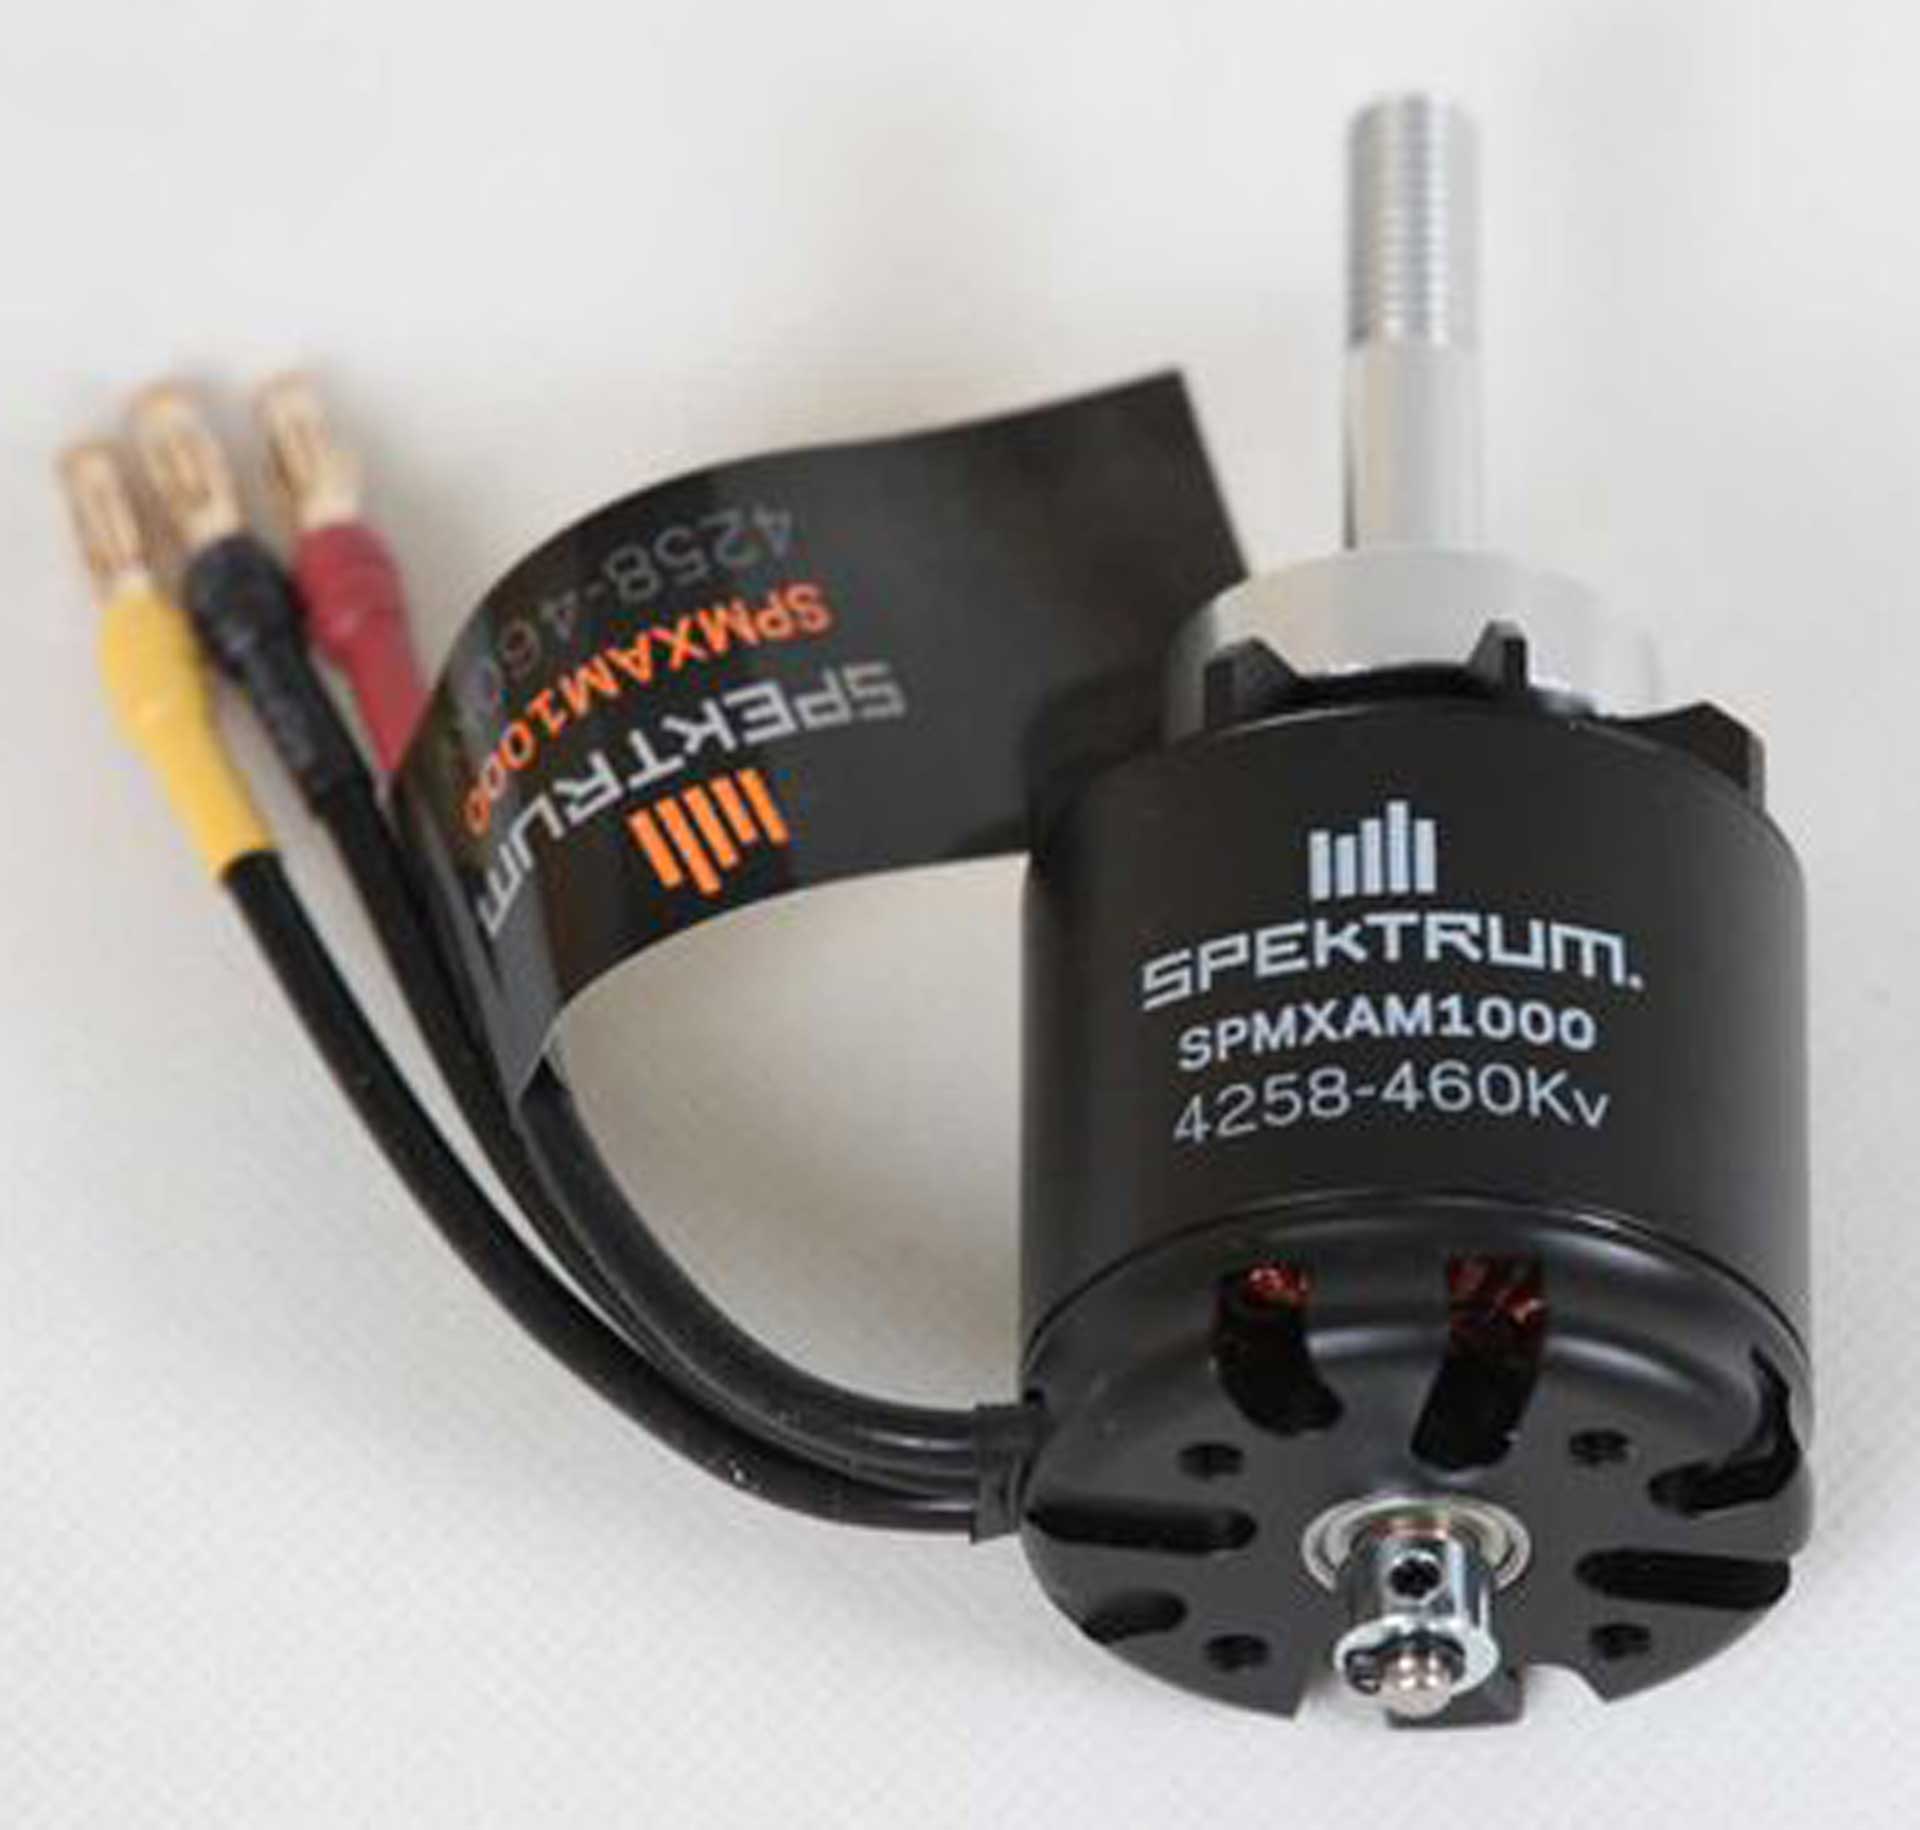 Spektrum 4258-460kV 14-Pole Brushless Motor